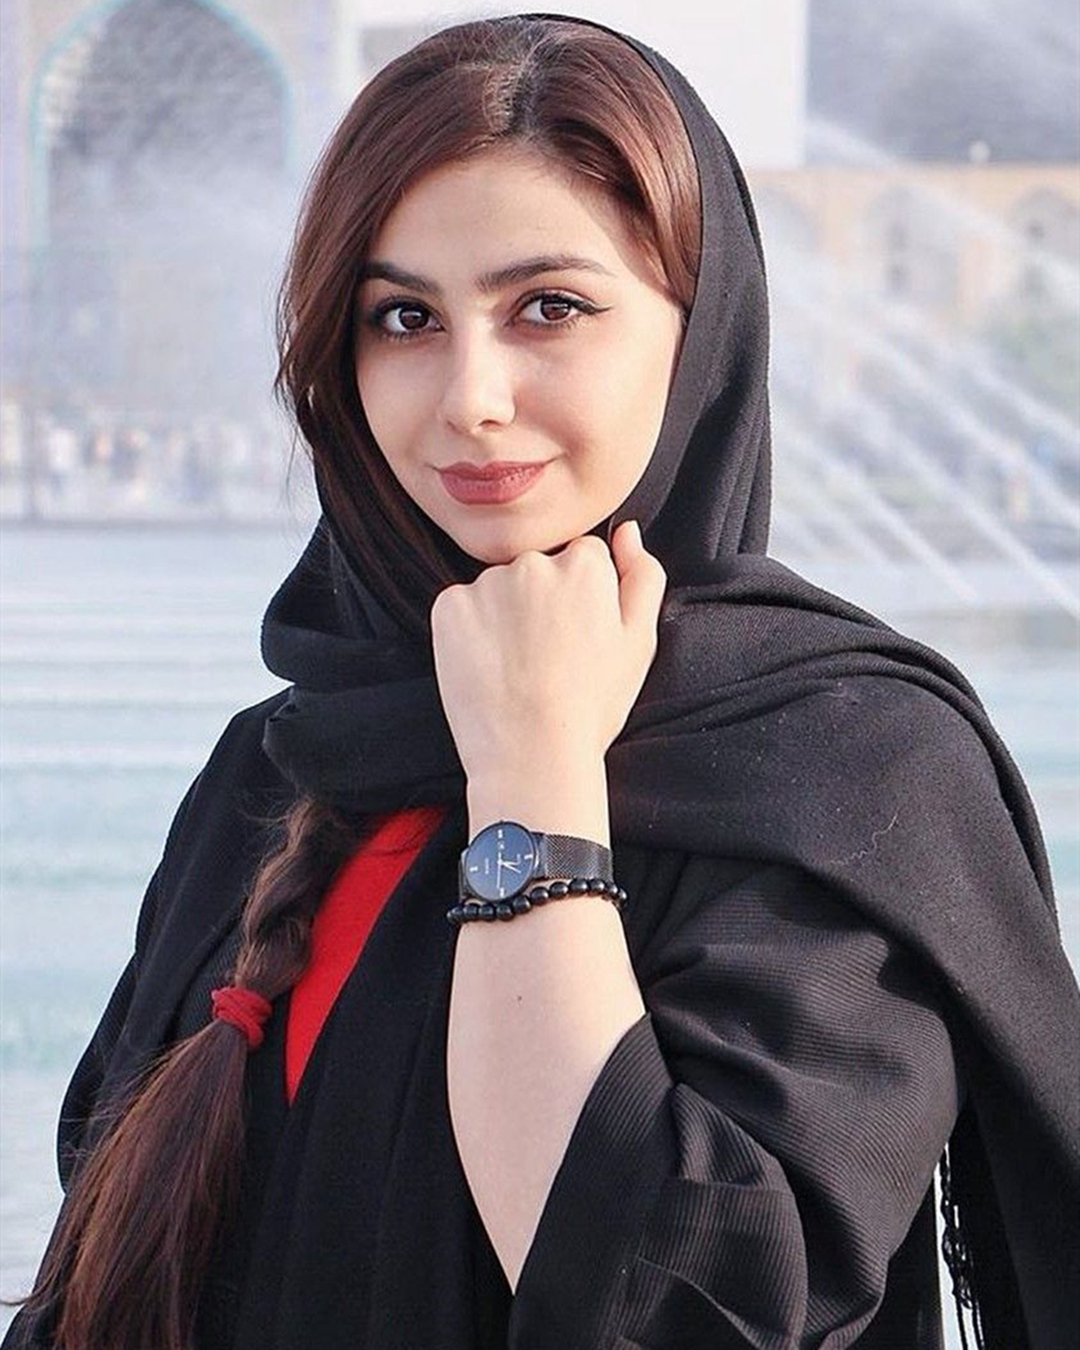 原创镜头下的伊朗少女头巾盖不住的火热黑纱遮不住的窈窕